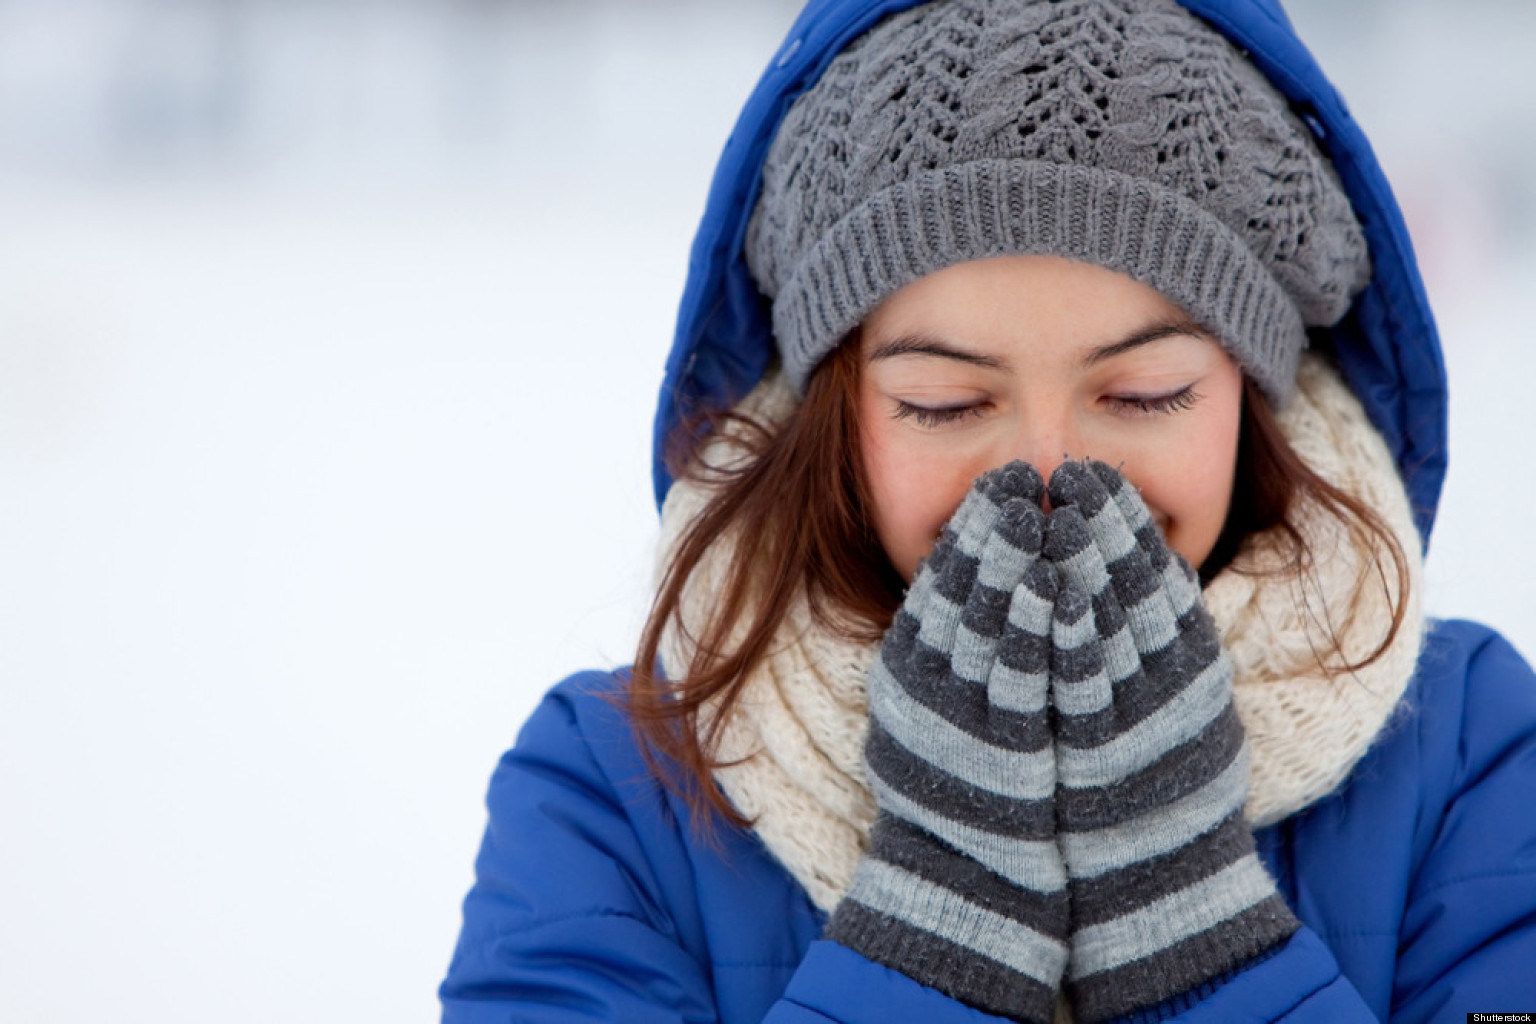 Hiểu biết về khoa học truyền nhiệt sẽ giúp giữ ấm cơ thể trong mùa đông một cách khoa học hơn